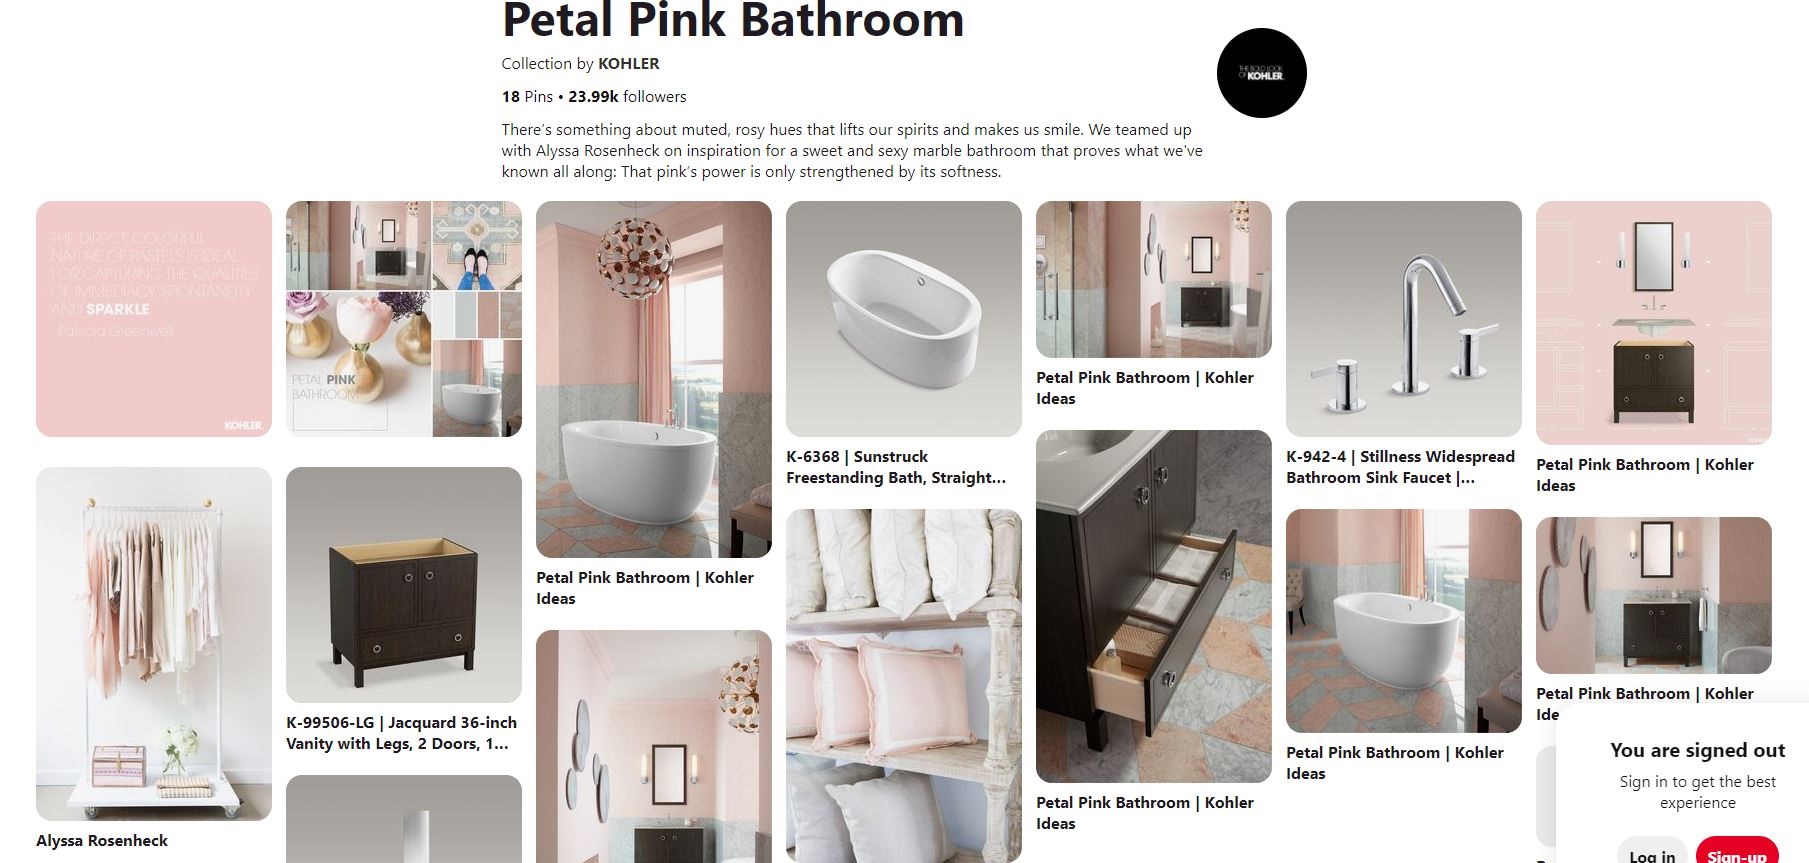 Screenshot of the petal pink bathroom colletion from Kohler